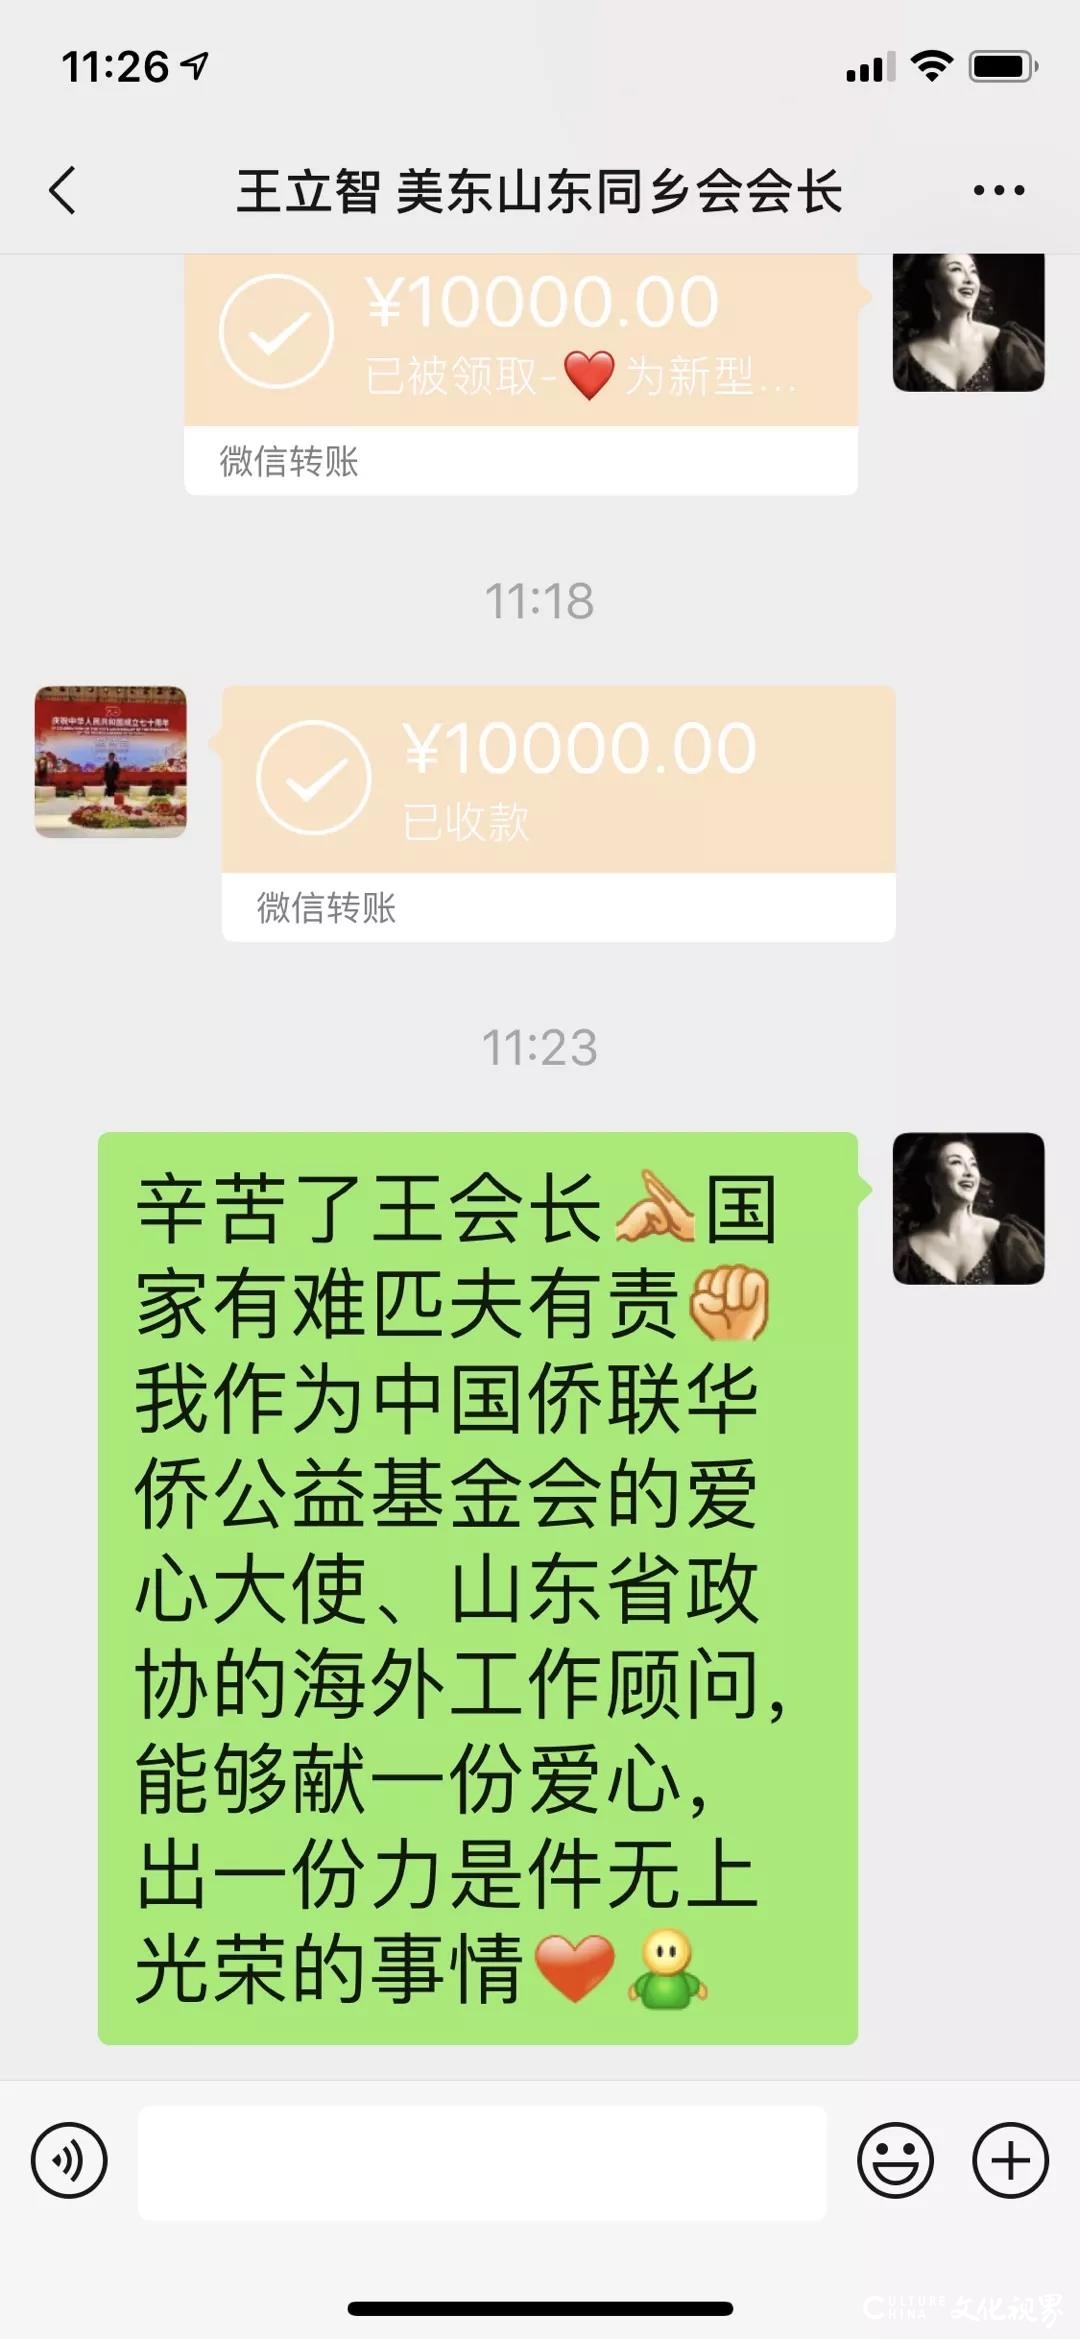 曲阜师范大学校友吴沁捐献10000元抗击疫情